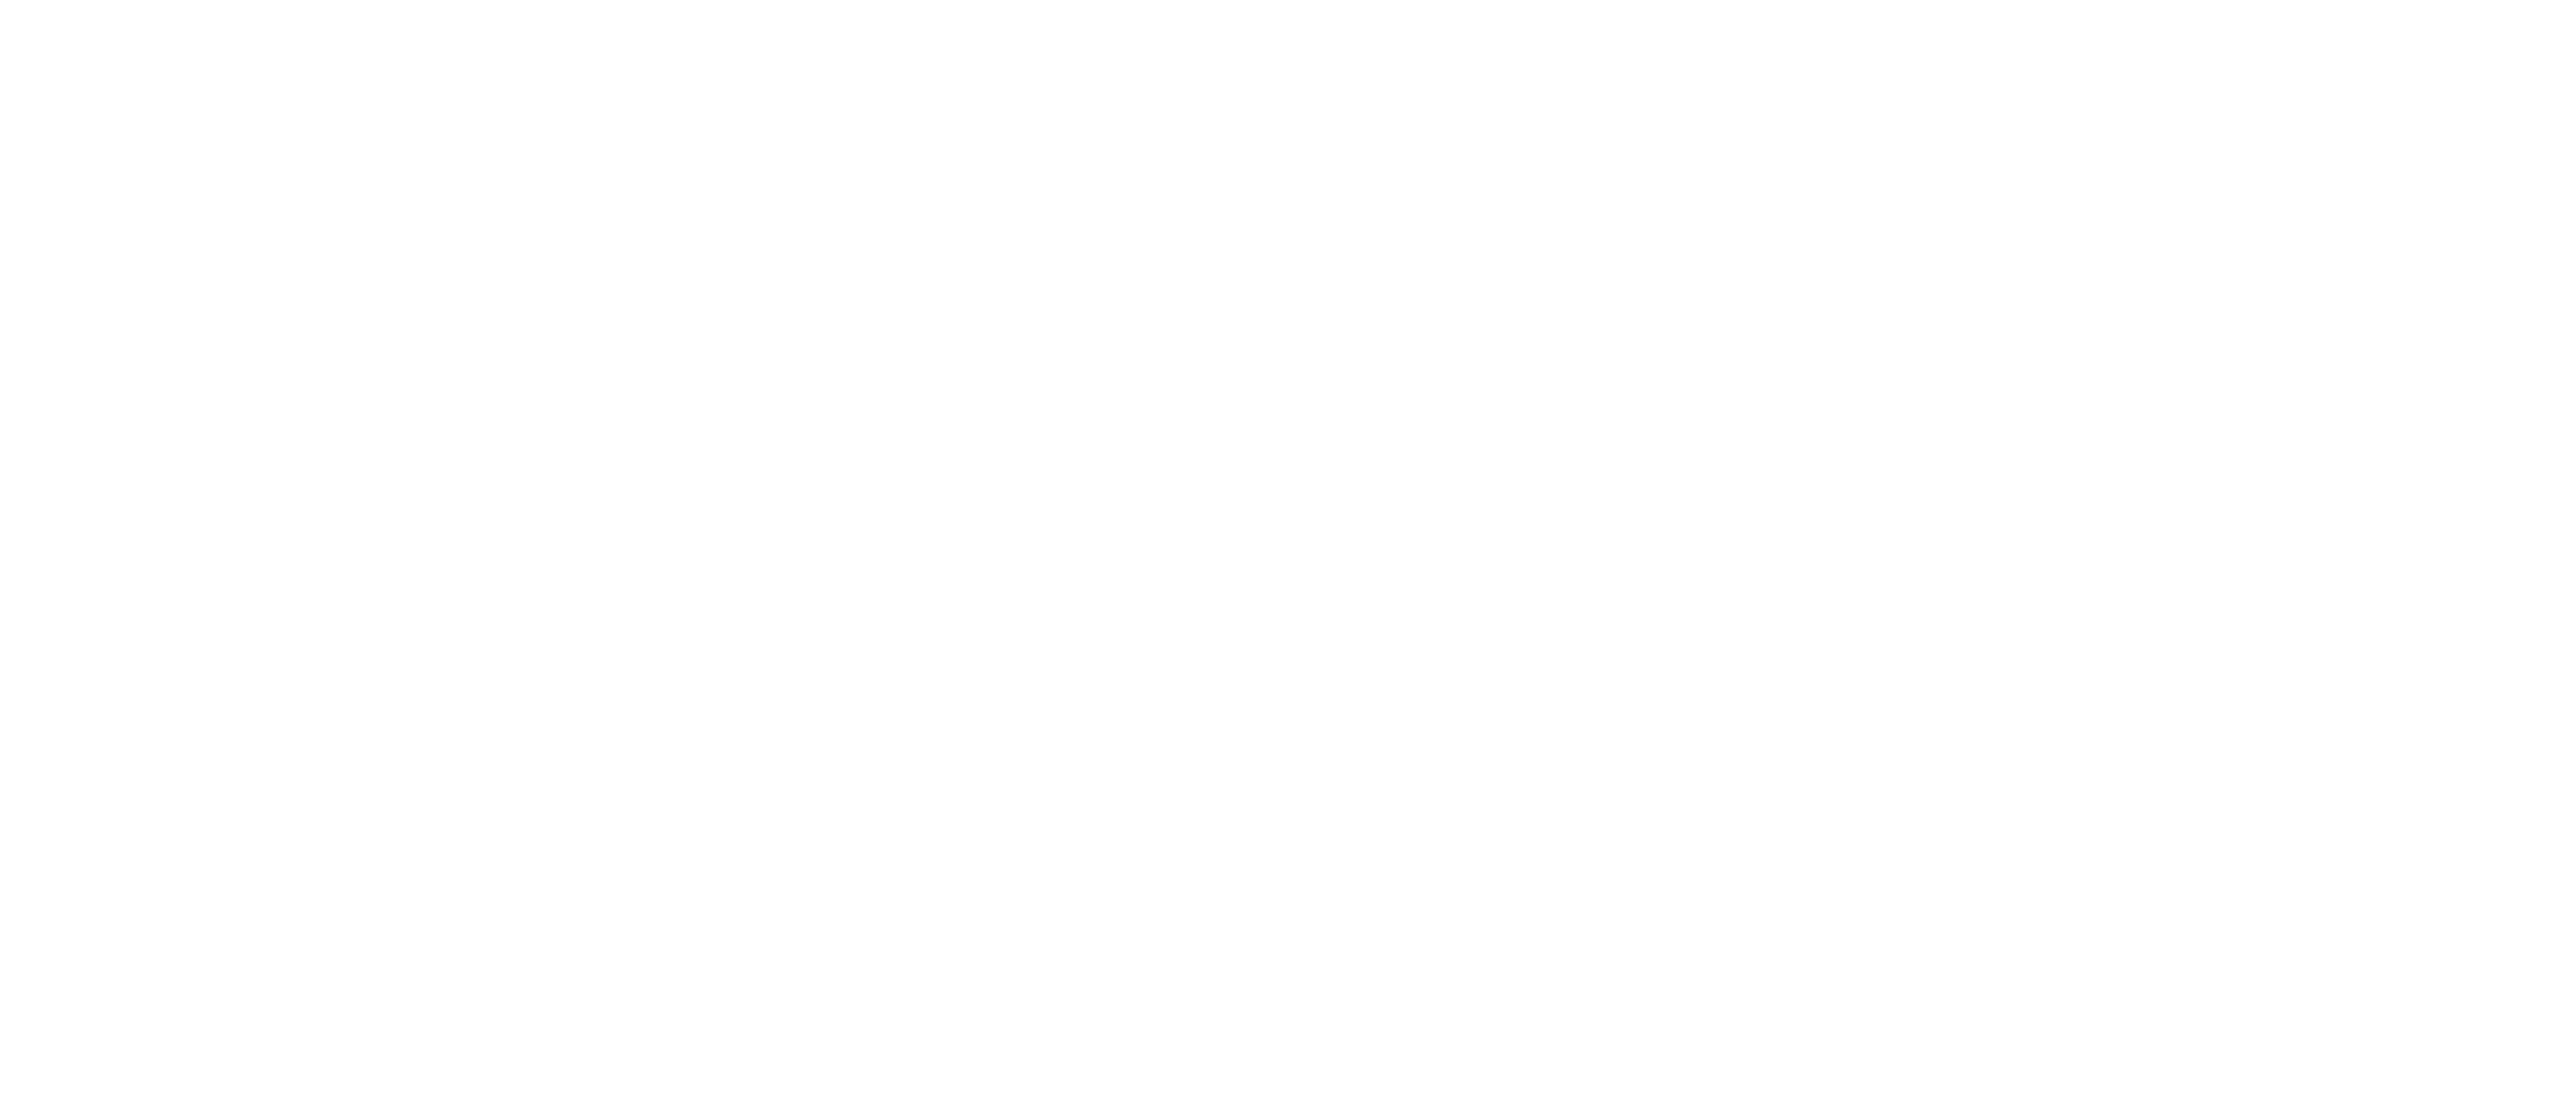 Fed Gov VAR Top Ten Award for 2023 from Lenel2